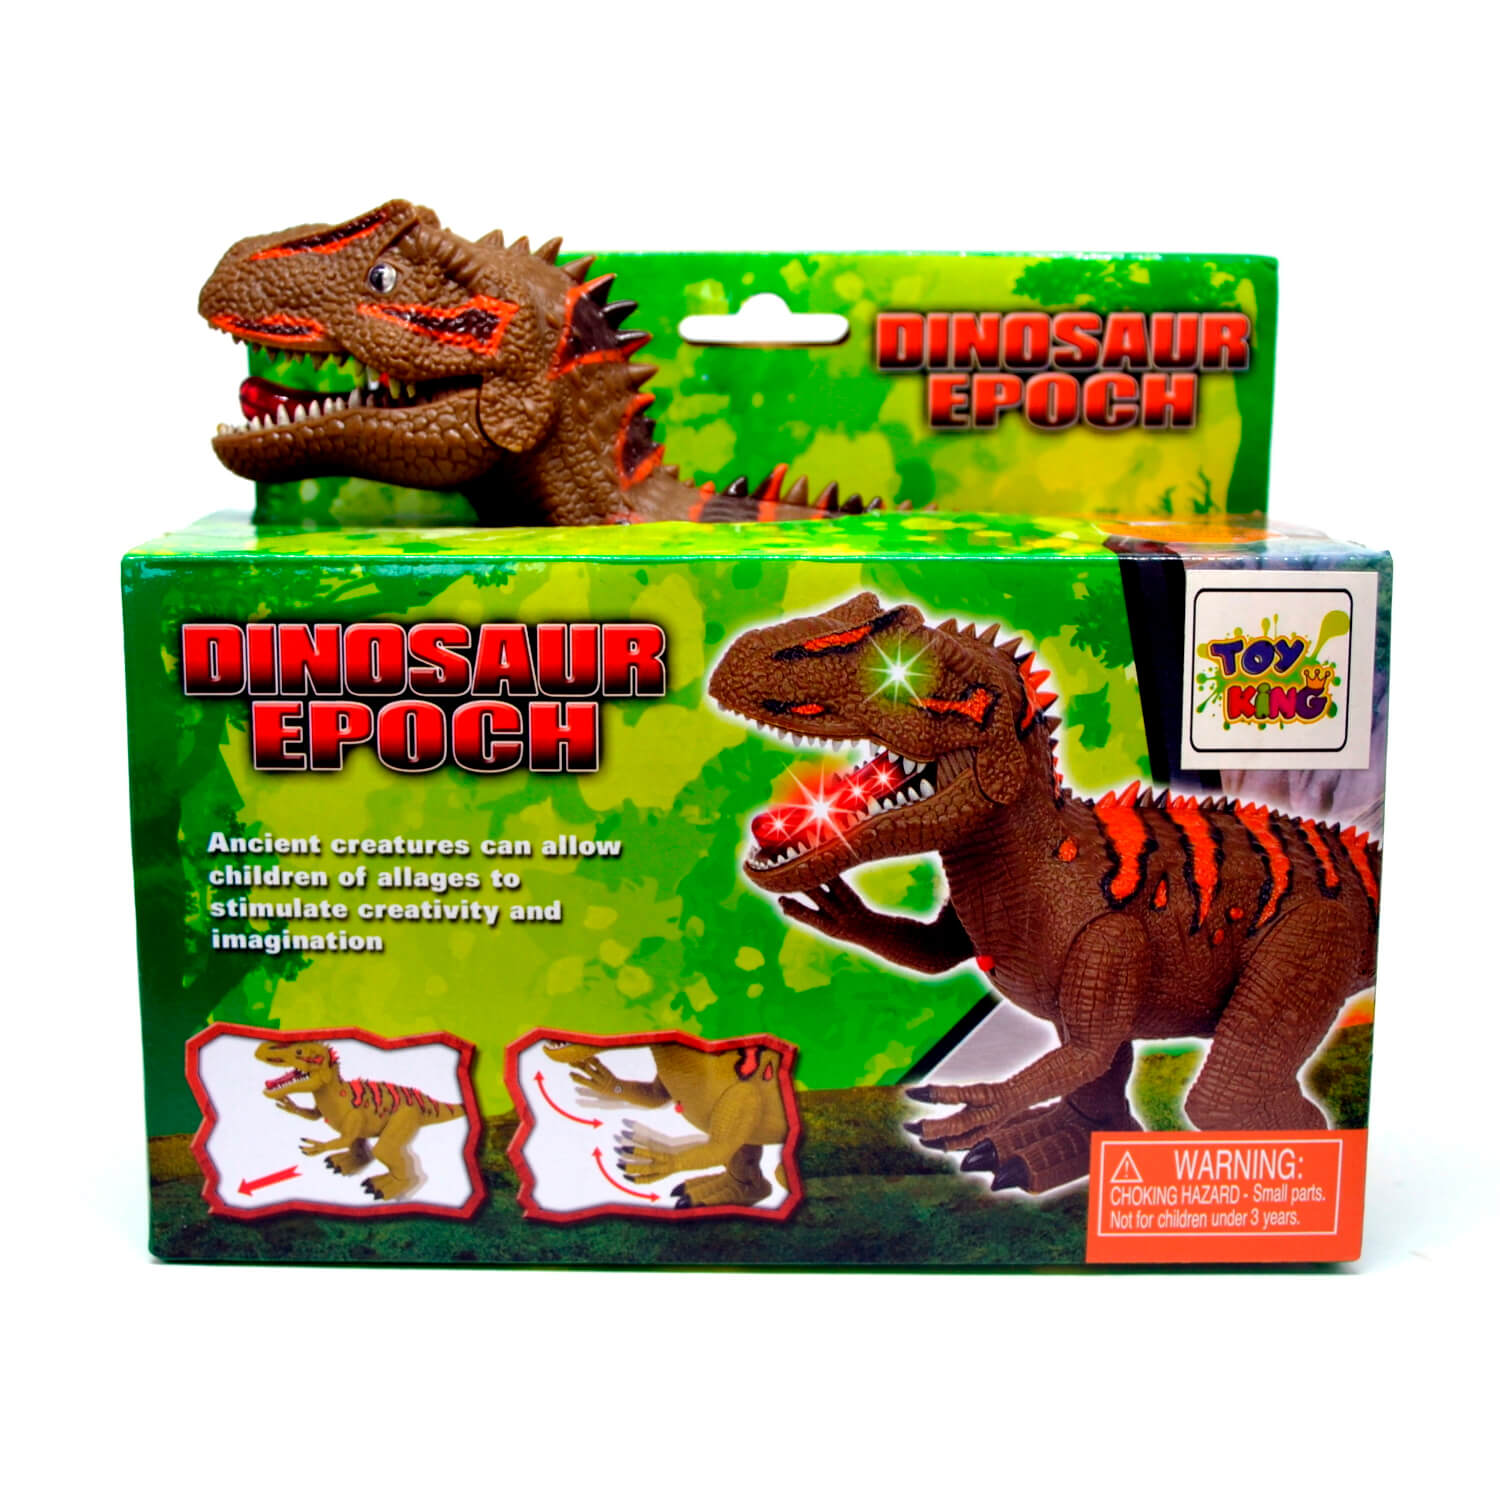 Source Jogos de rei de dinossauro, animais de floresta plástico